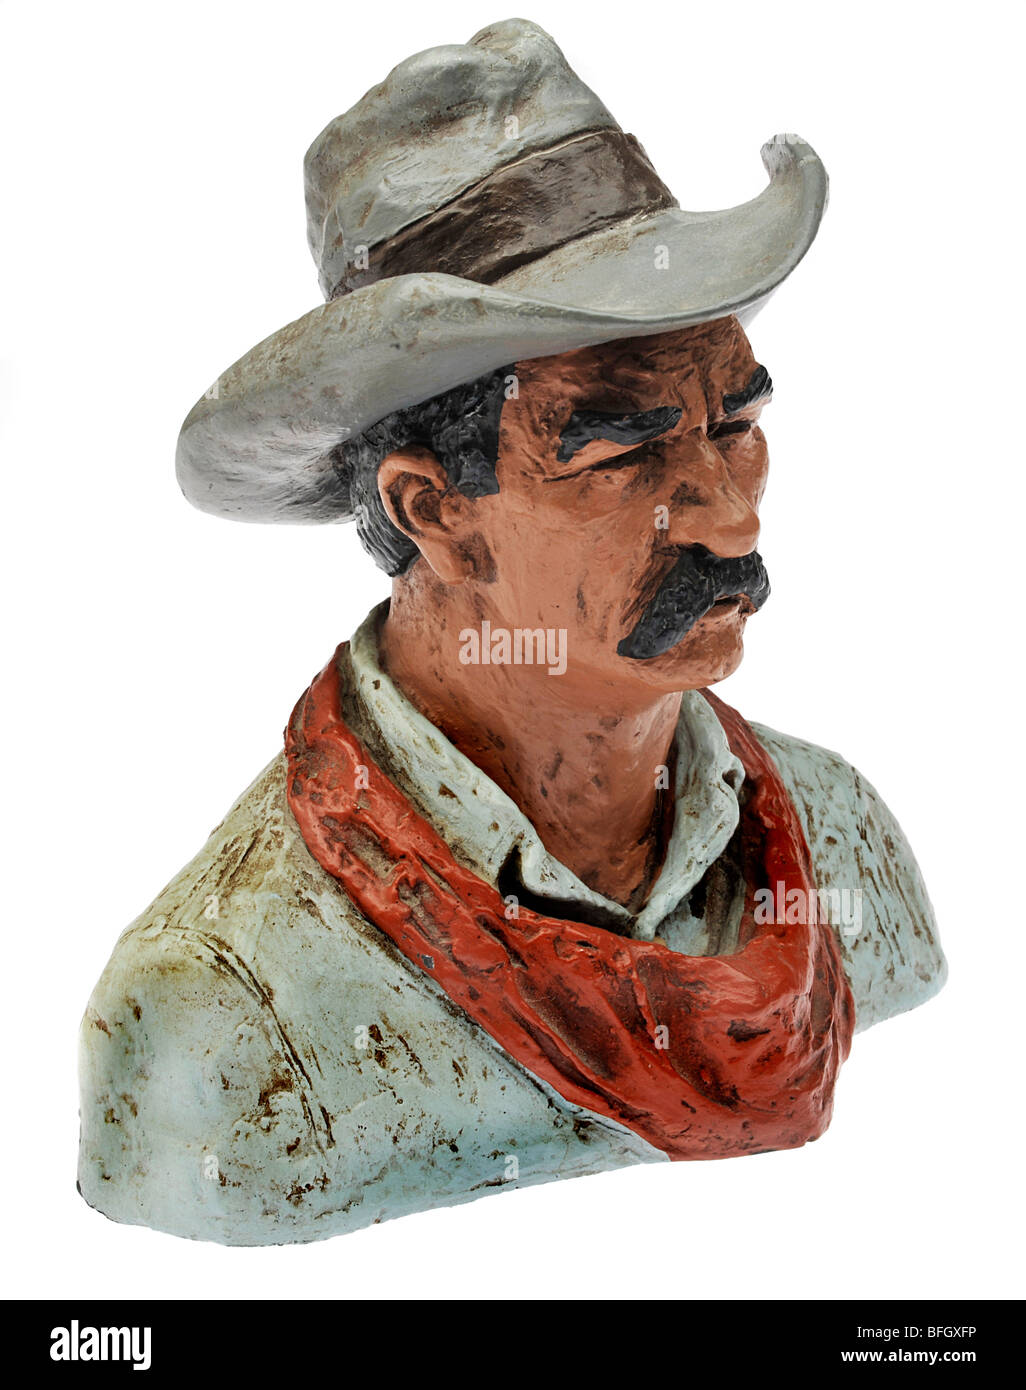 Büste von Cowboy mit Cowboy-Hut und Halstuch. Stockfoto